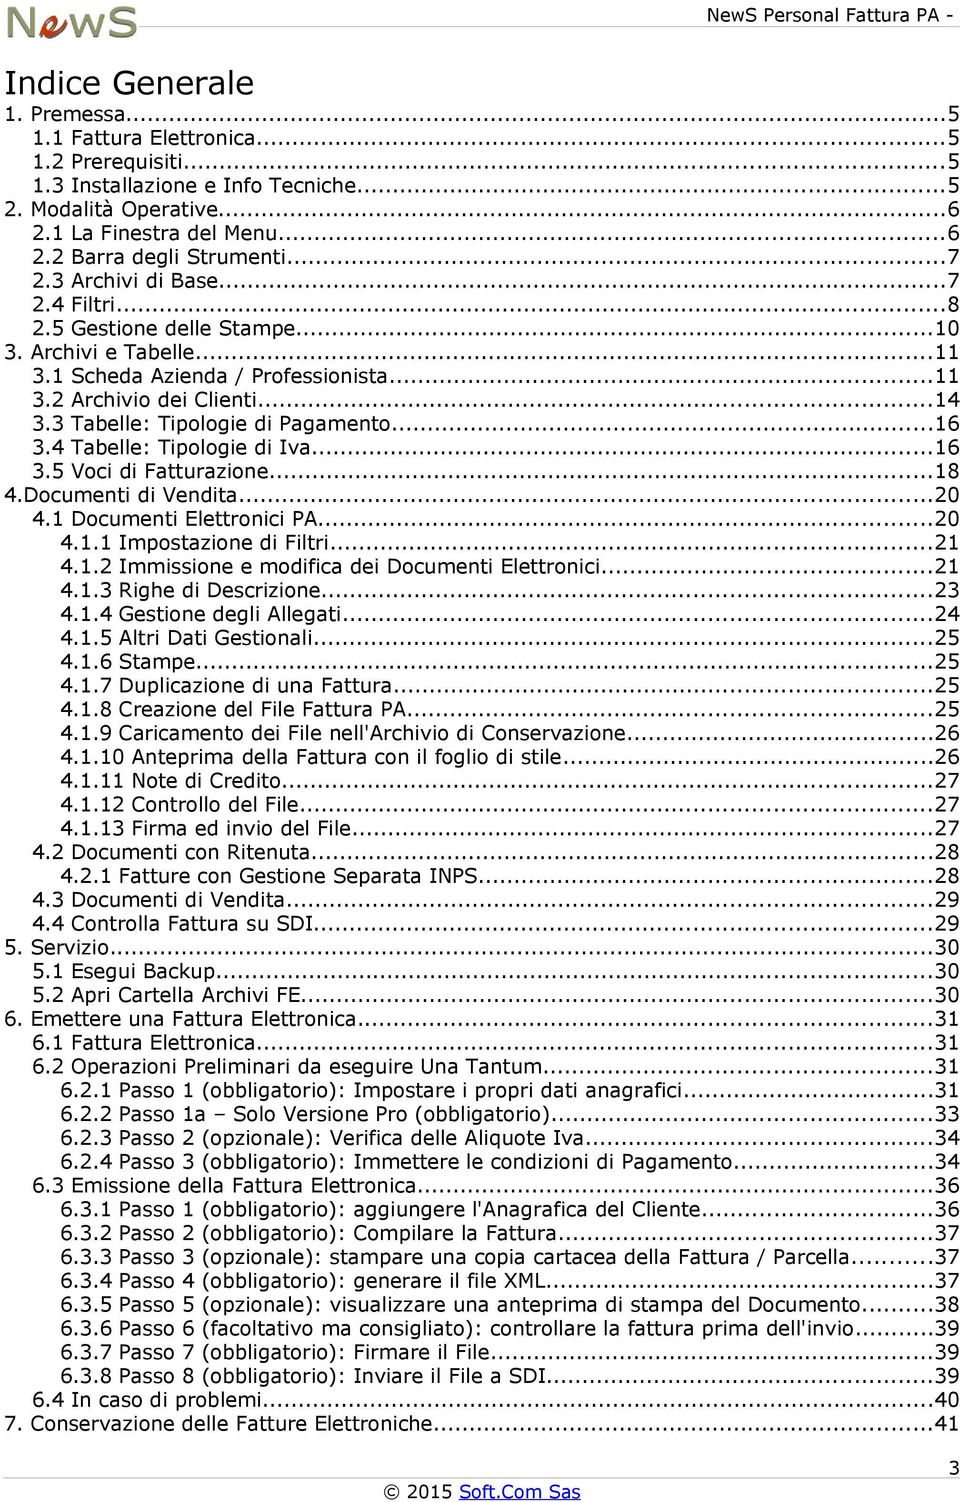 ..14 3.3 Tabelle: Tipologie di Pagamento...16 3.4 Tabelle: Tipologie di Iva...16 3.5 Voci di Fatturazione...18 4.Documenti di Vendita...20 4.1 Documenti Elettronici PA...20 4.1.1 Impostazione di Filtri.